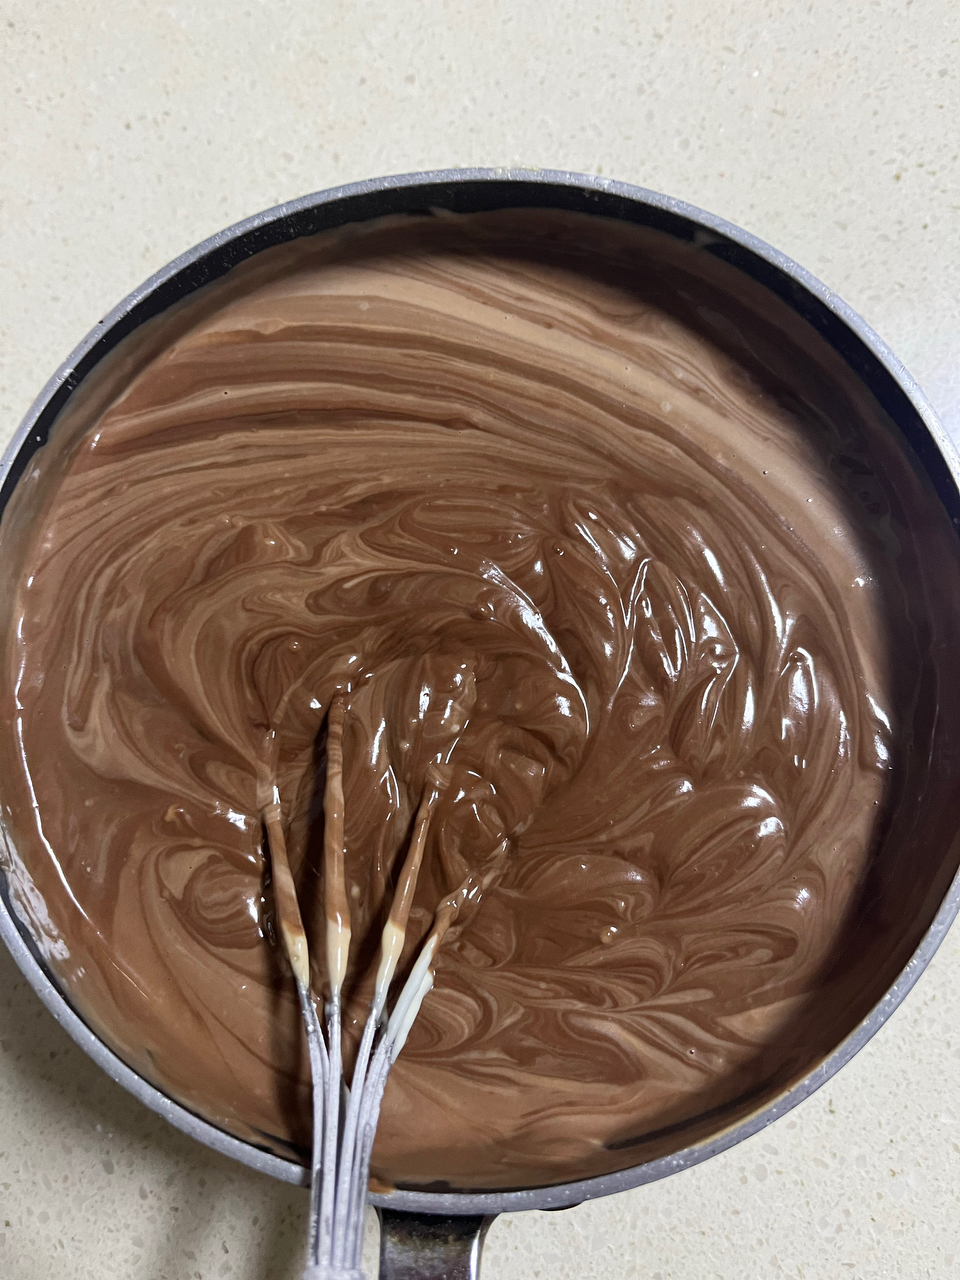 我的镇店之宝—巧克力熔岩蛋糕配方分享